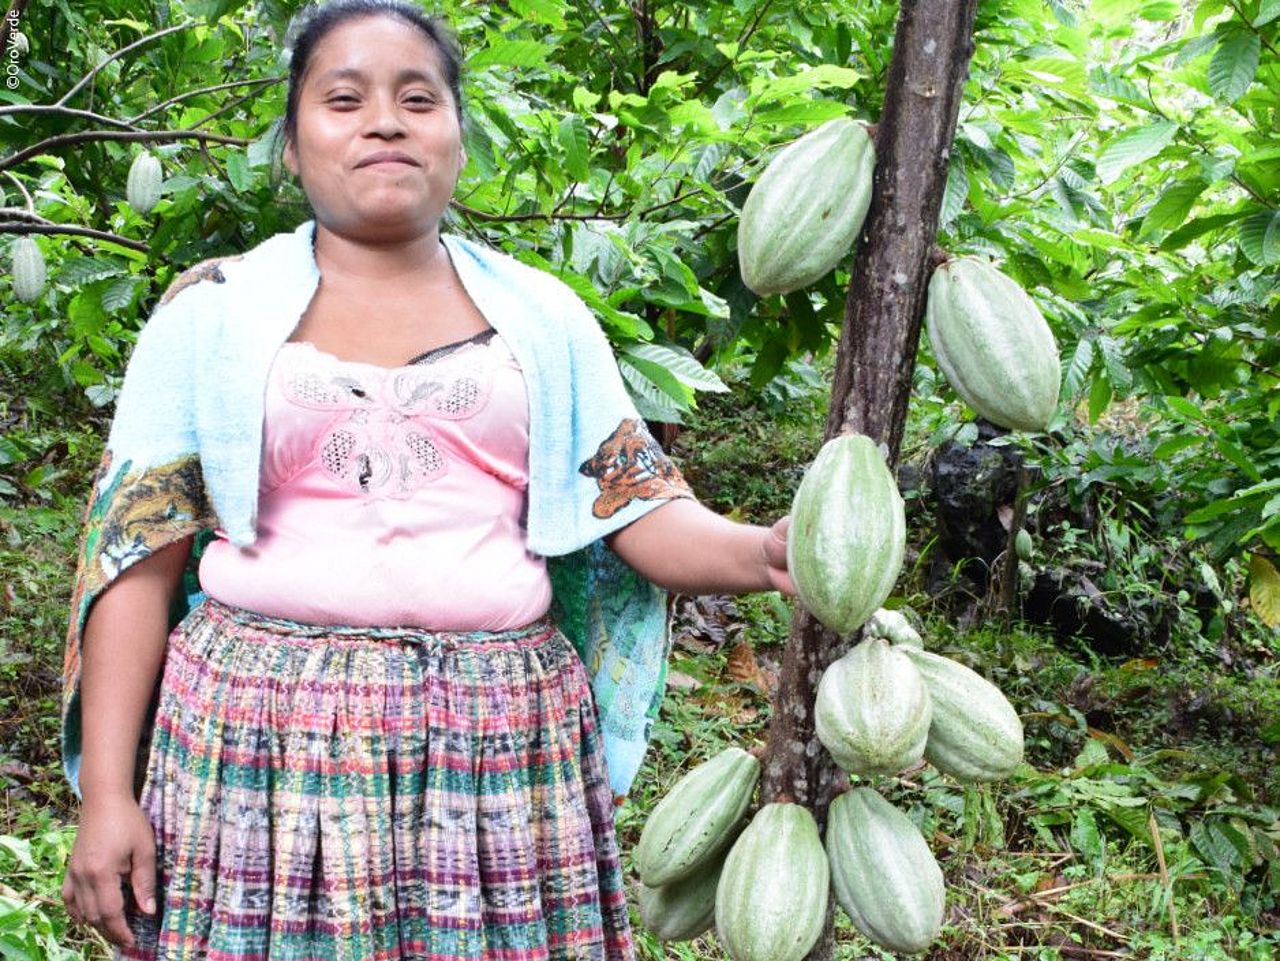 Kakao aus Agroforstsystemen ist eine nachhaltige Ressource. ©OroVerde